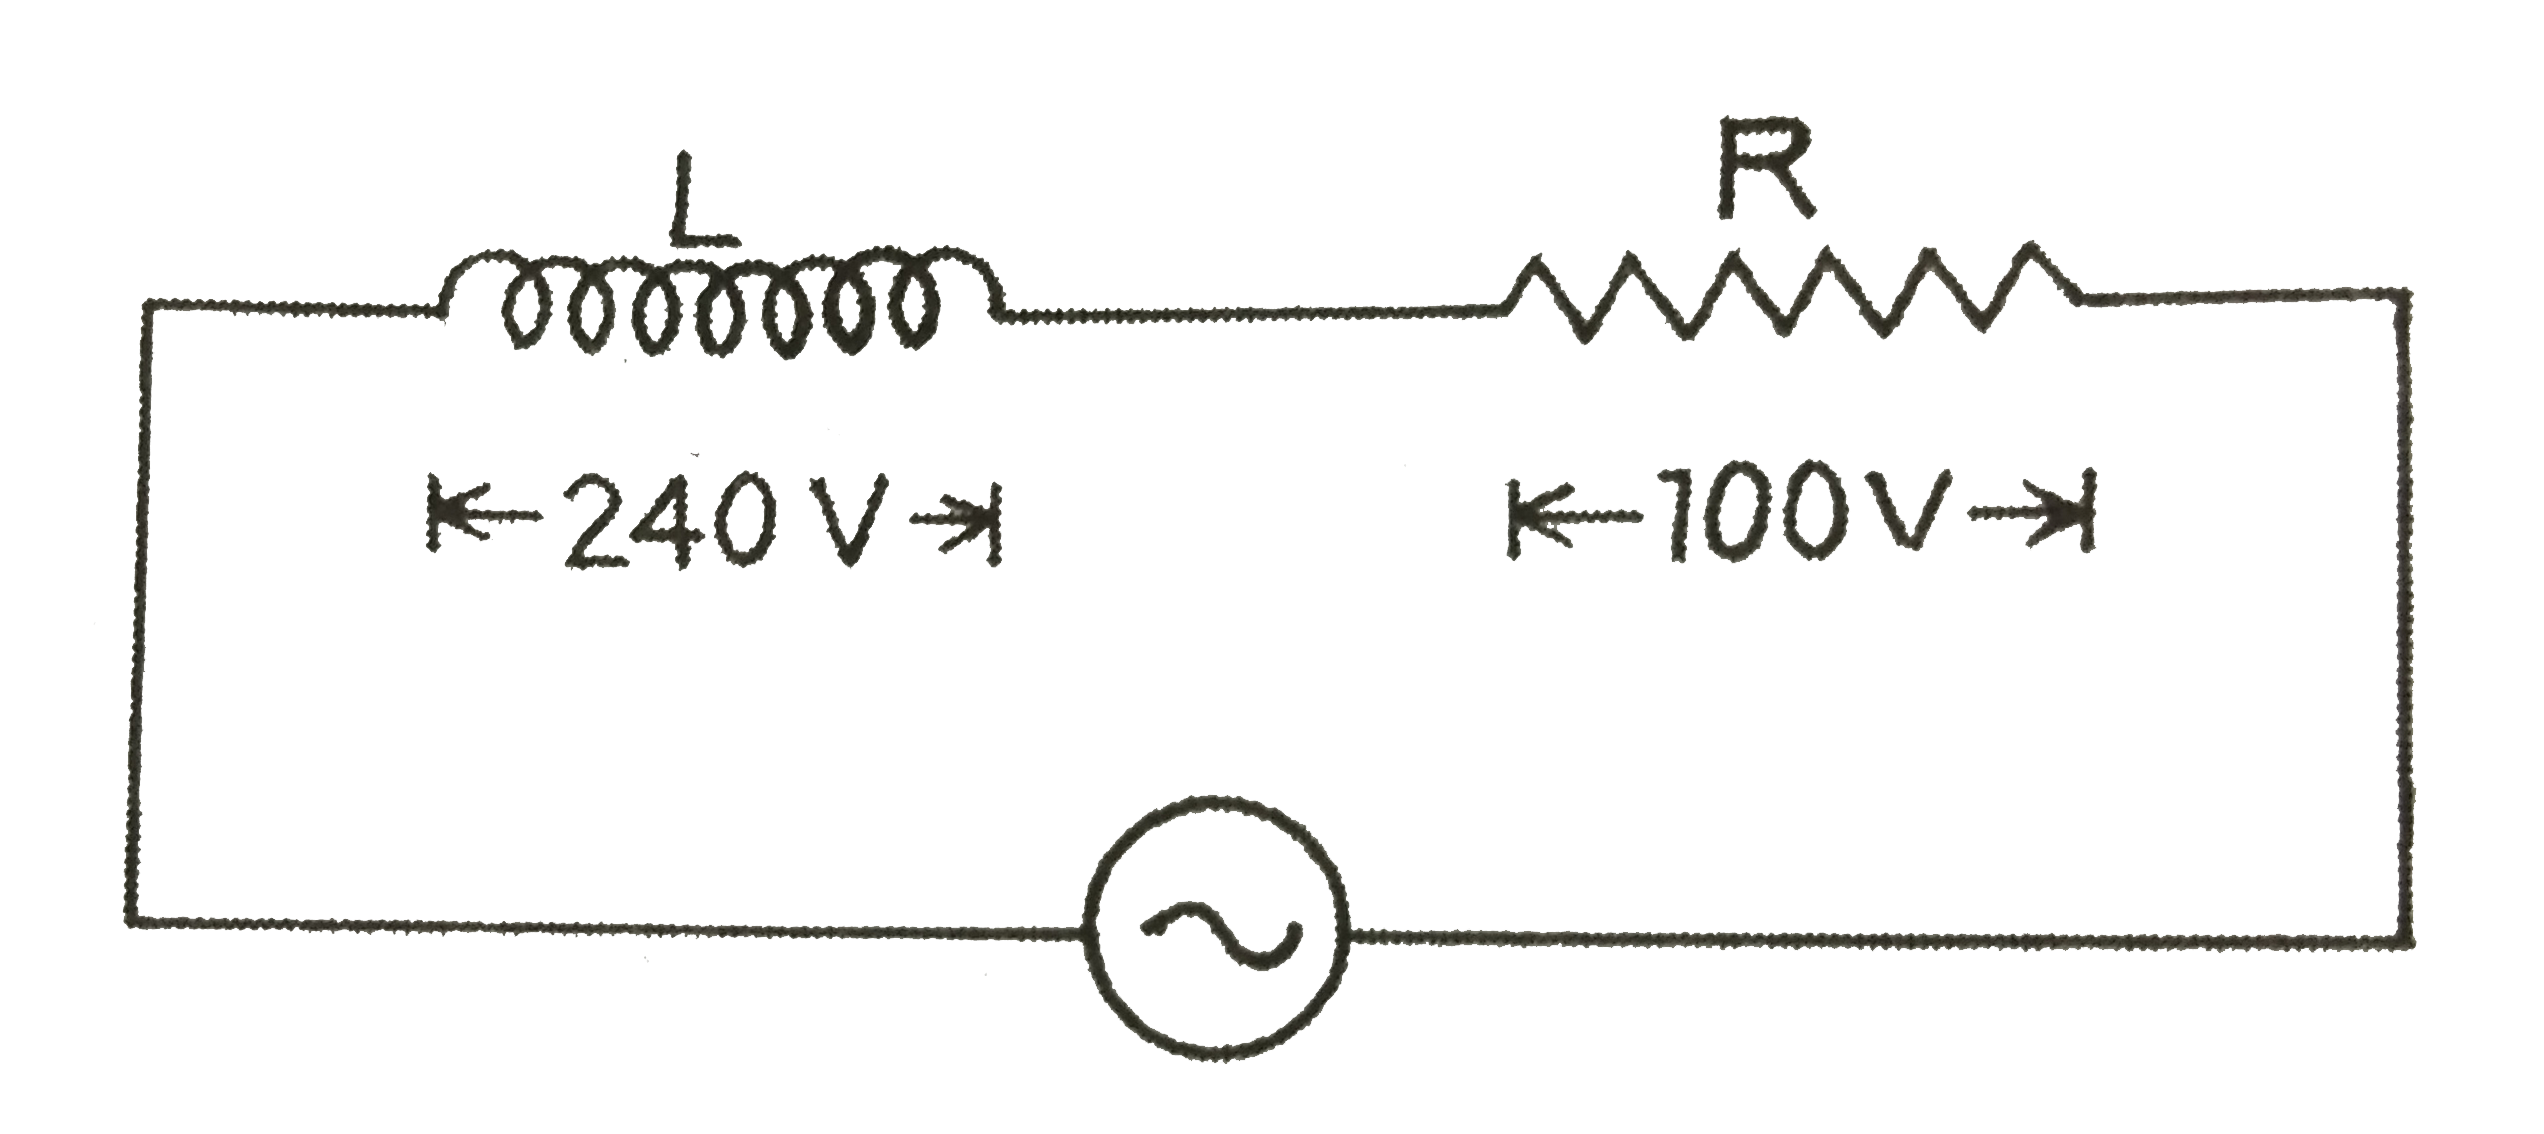 संलग्न चित्र  में  एक प्रेरकत्व - कुण्डली  L  व प्रतिरोध  R  में  2  एम्पियर  की  धारा  बह  रही है ।(i)   प्रत्यावर्ती  धारा - स्त्रोत की  वोल्टता  तथा (ii)  परिपथ  की प्रतिबाधा  ज्ञात कीजिए ।